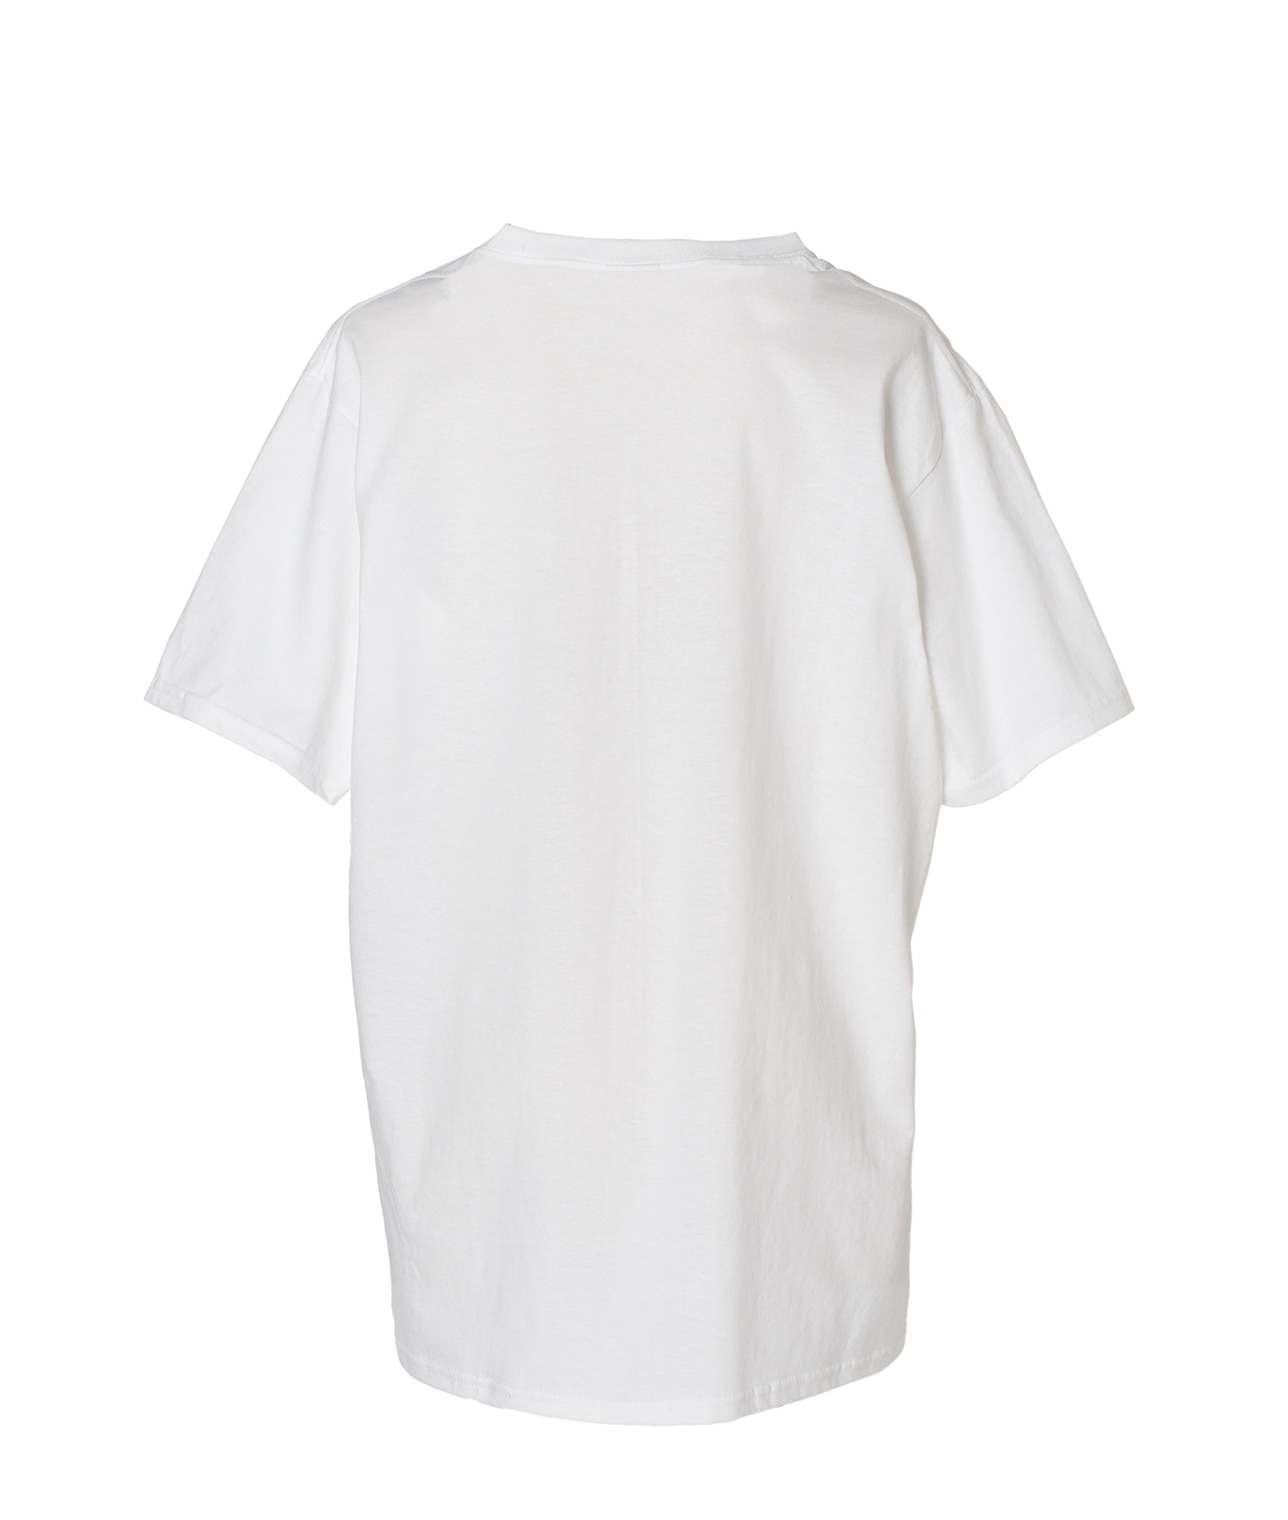 【別注】FRUIT OF THE LOOM/ビッグロゴ刺繍パックTシャツ 詳細画像 ホワイト/グレー 3